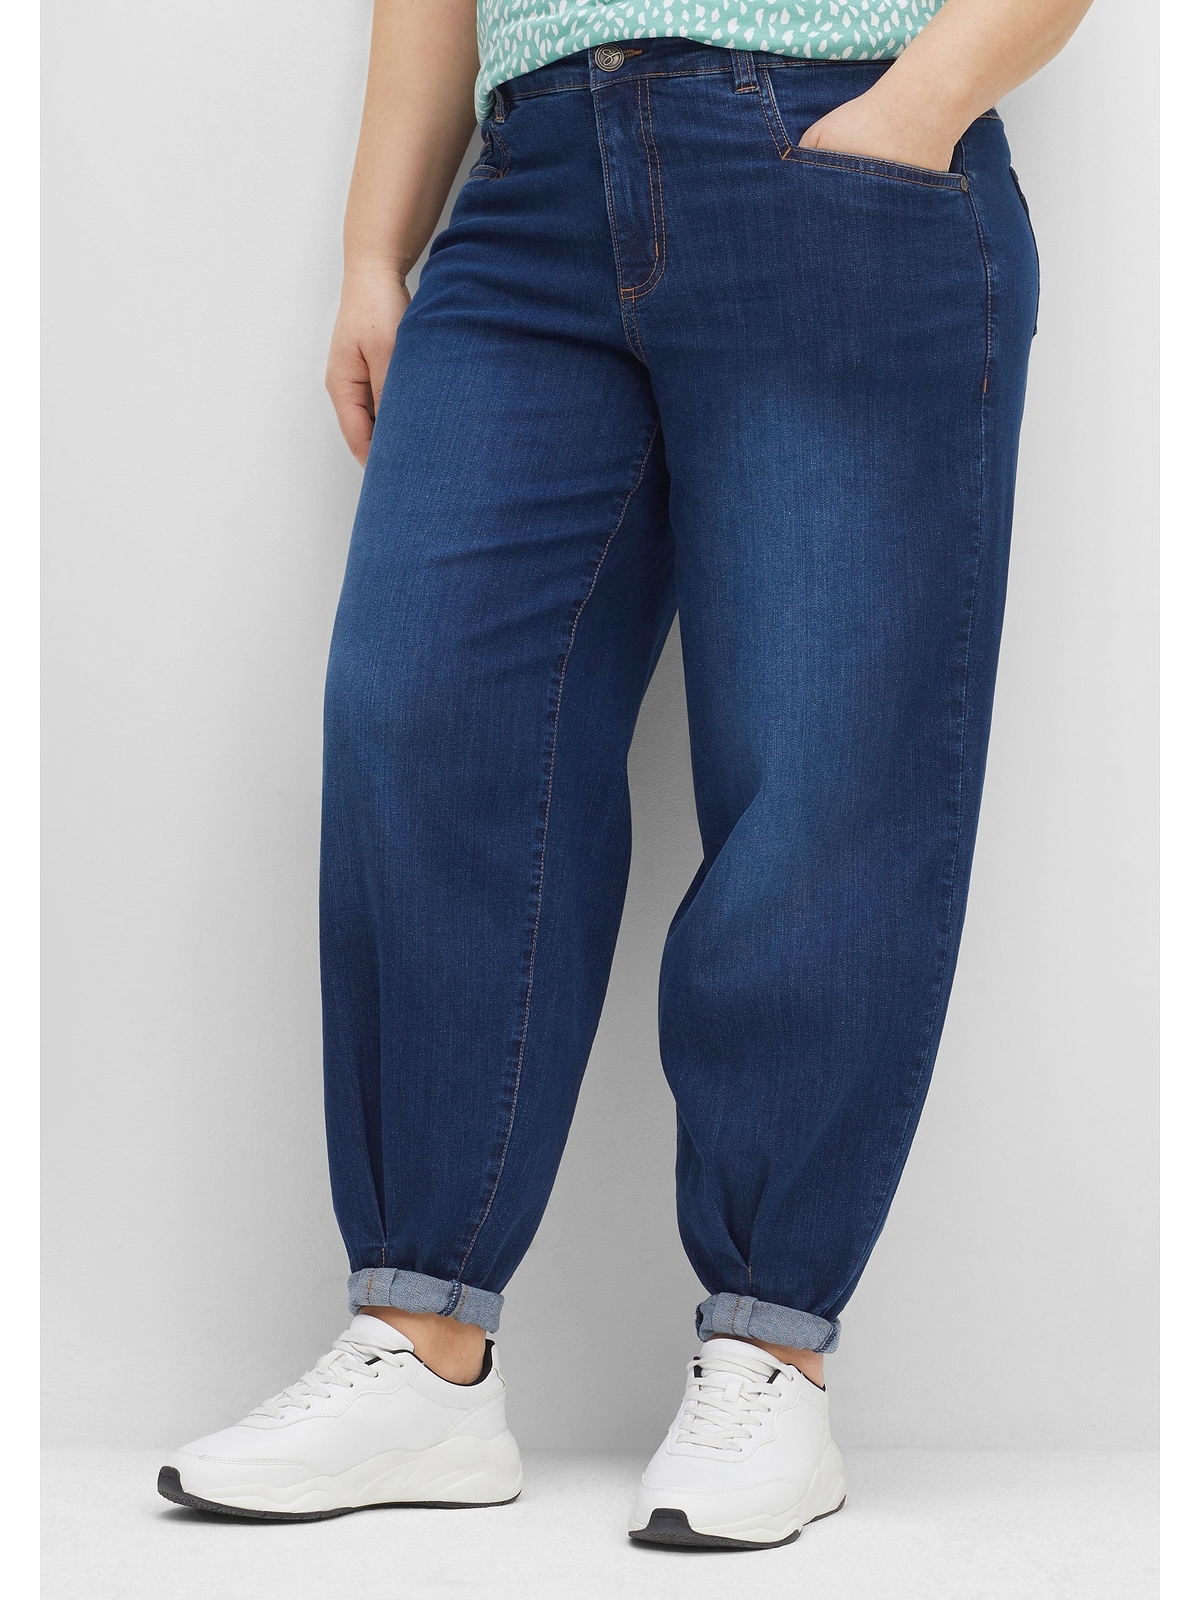 »Große shoppen Größen«, in Sheego OLIVIA Five-Pocket-Form Stretch-Jeans